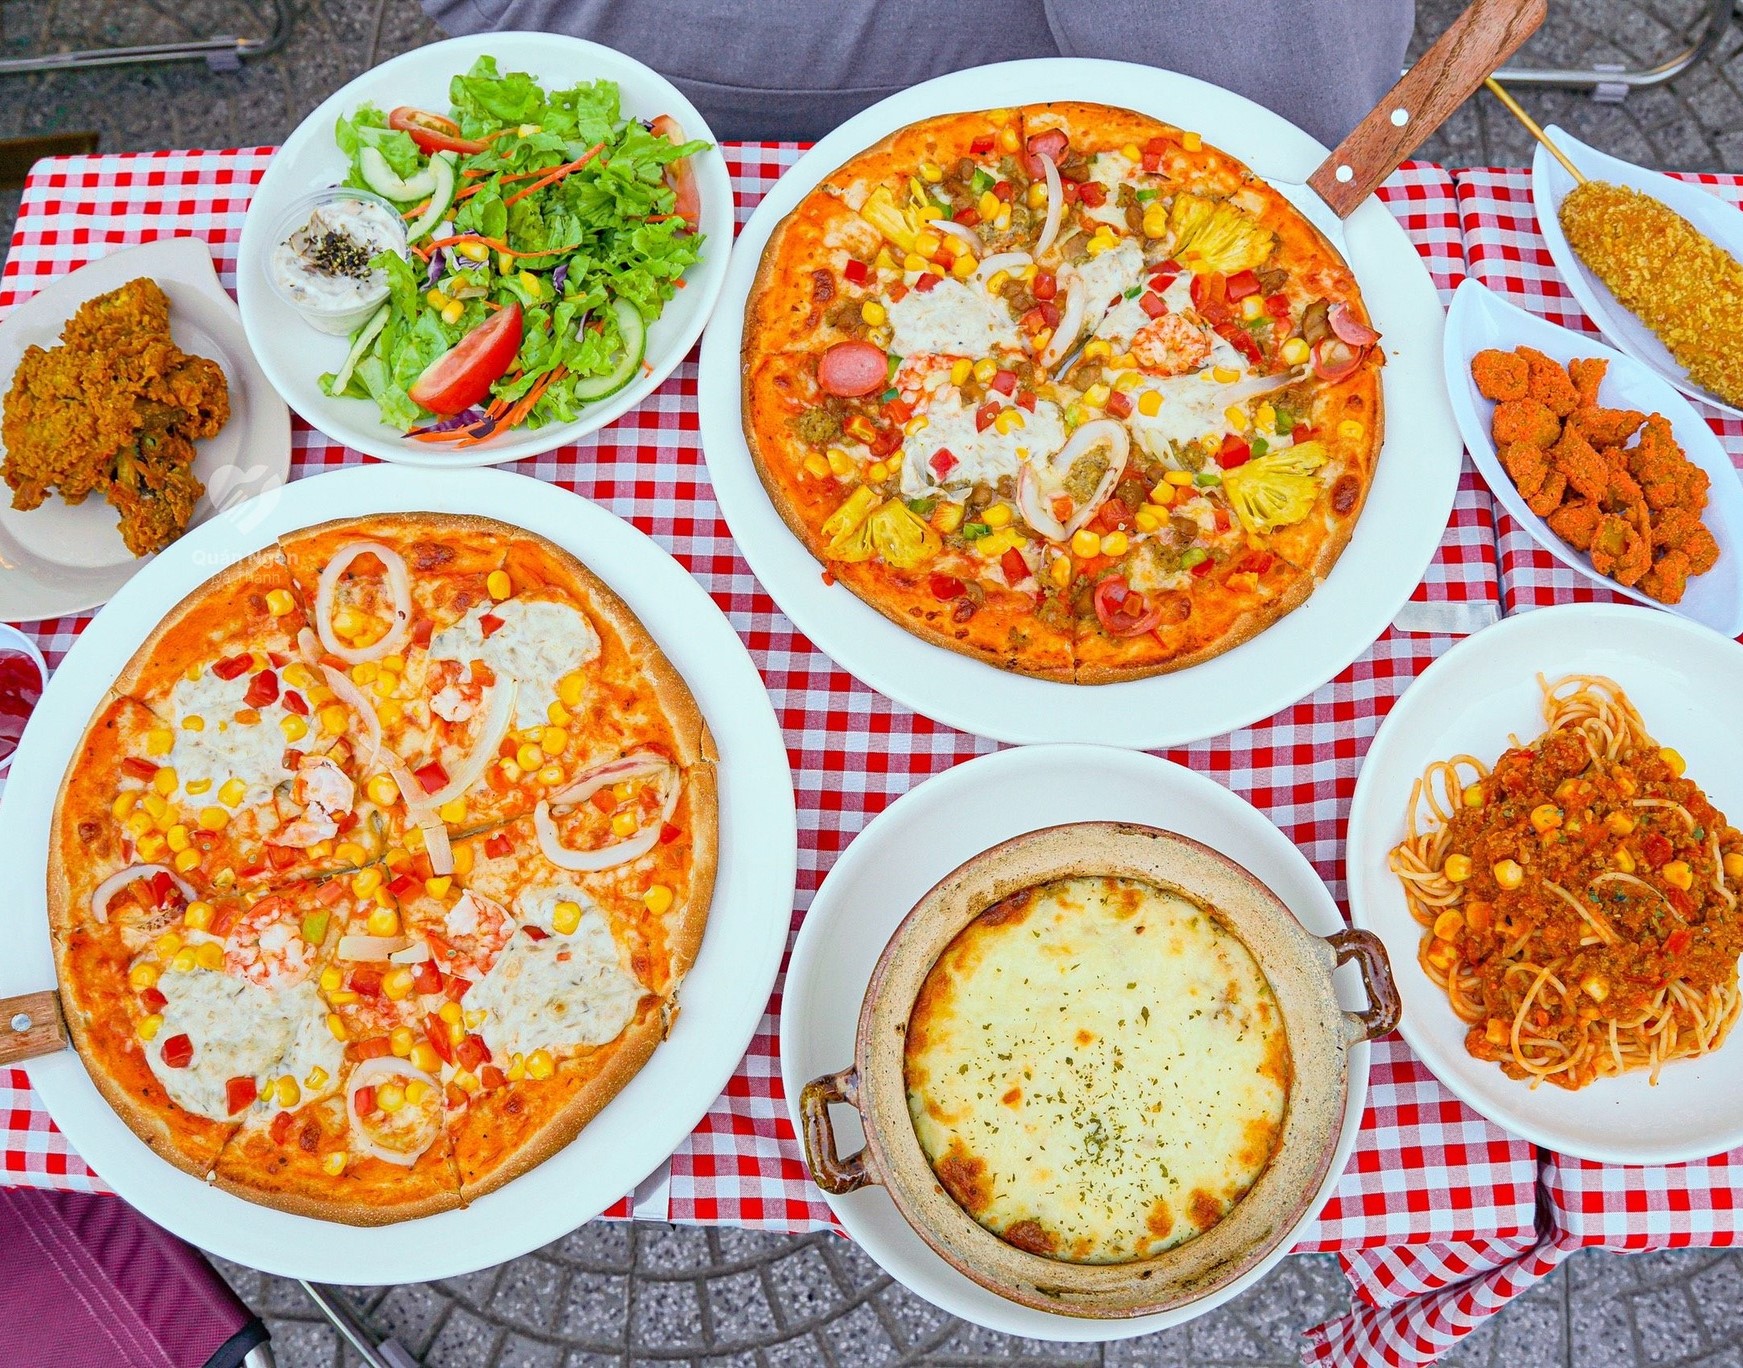 thương hiệu pizza nổi tiếng Đà Nẵng